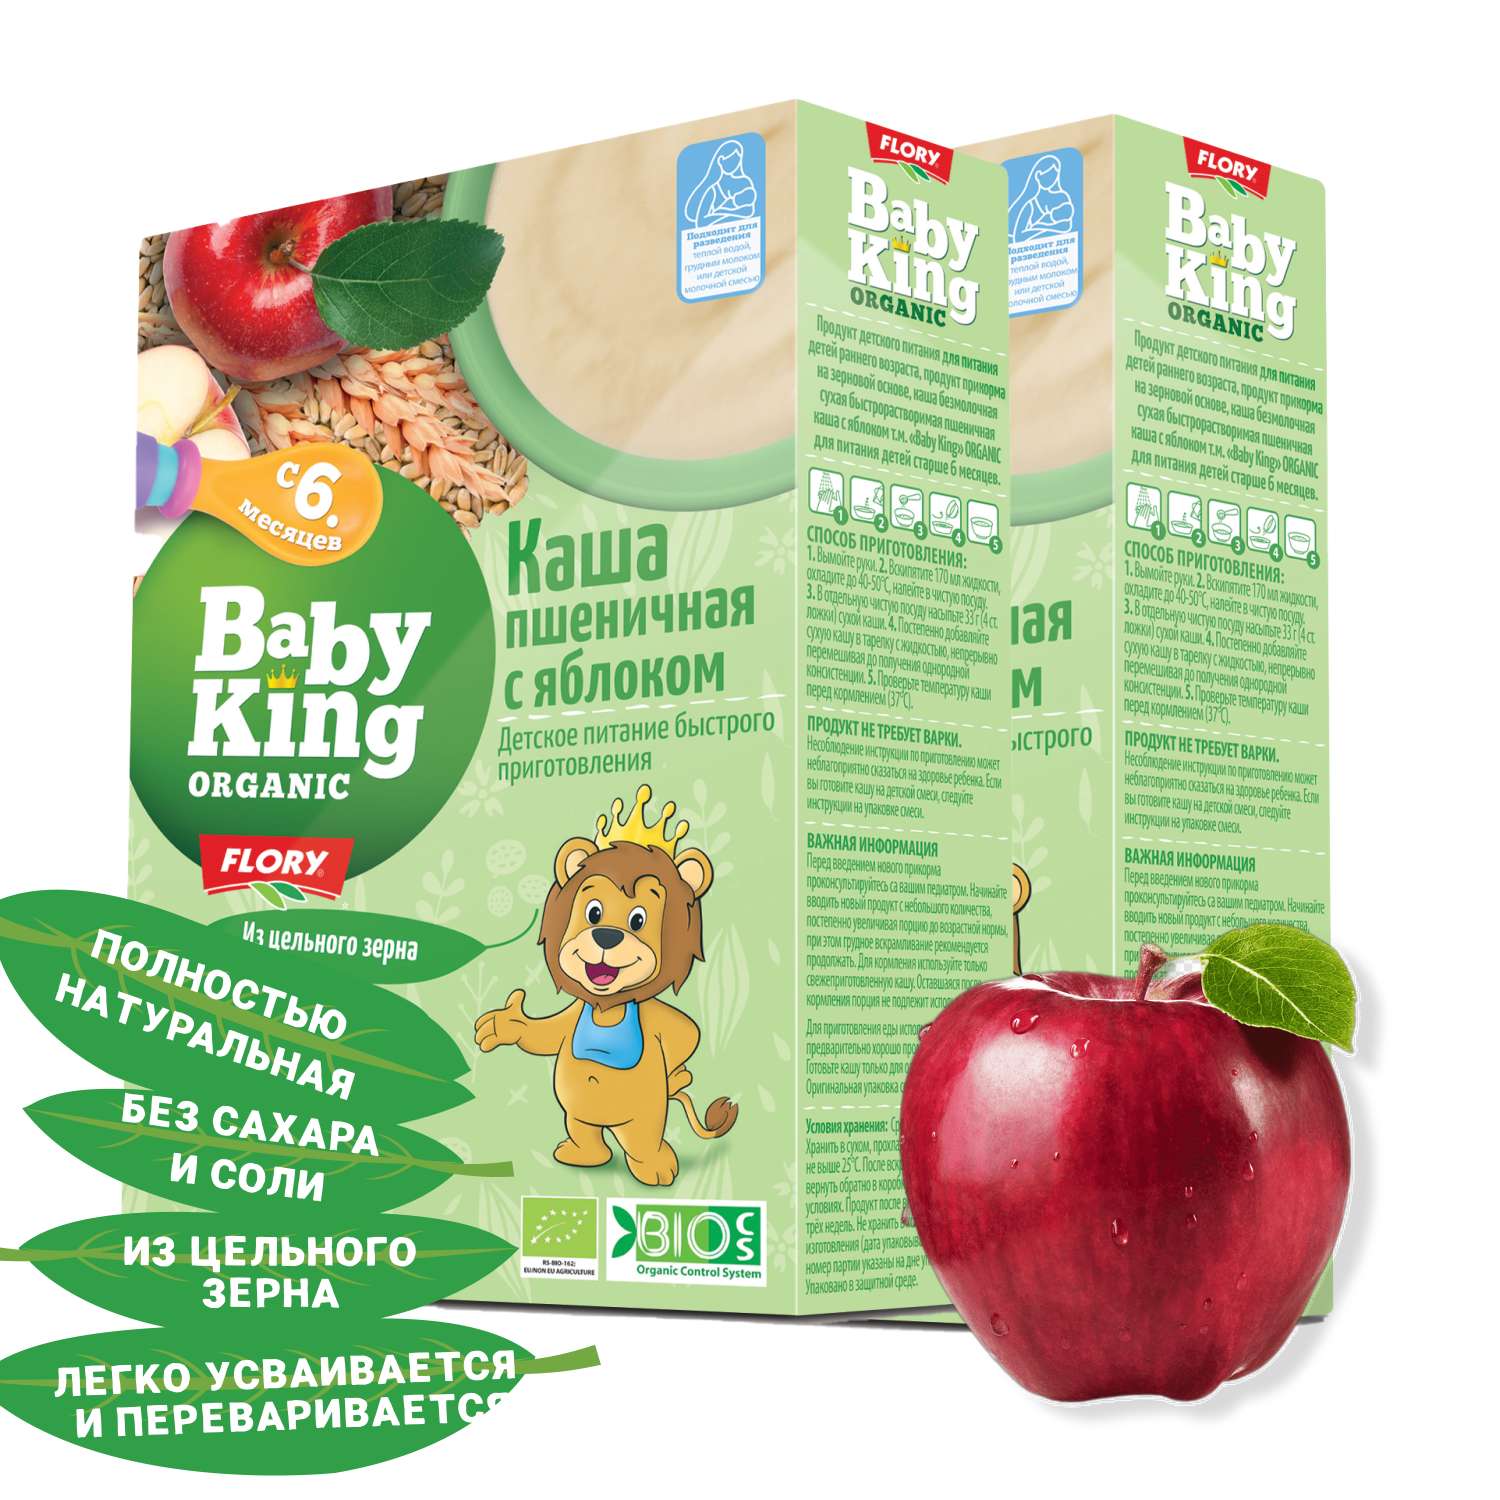 Каша детская Baby King Organic безмолочная пшеничная с яблоком 175гр с 6 месяцев x 2 шт. - фото 1